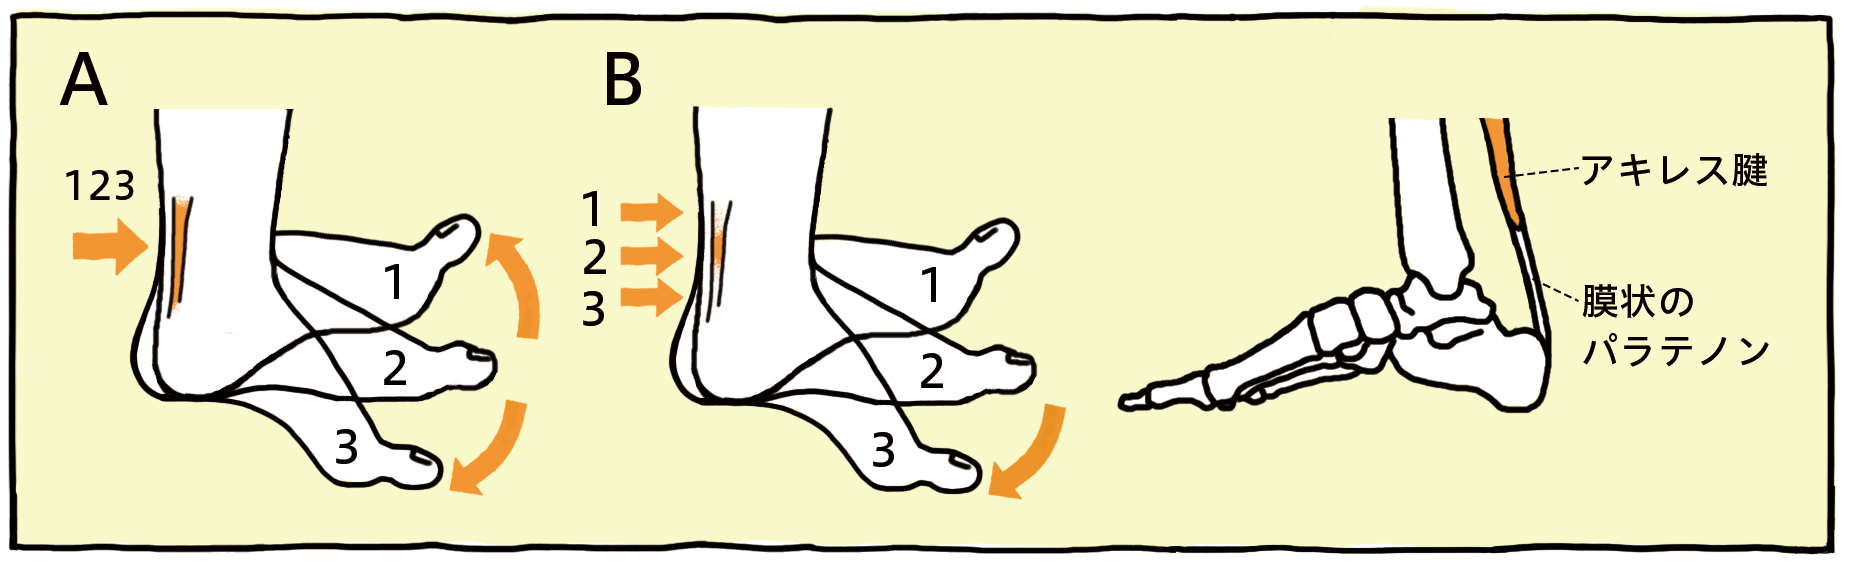 アキレス腱周囲炎のA図とB図